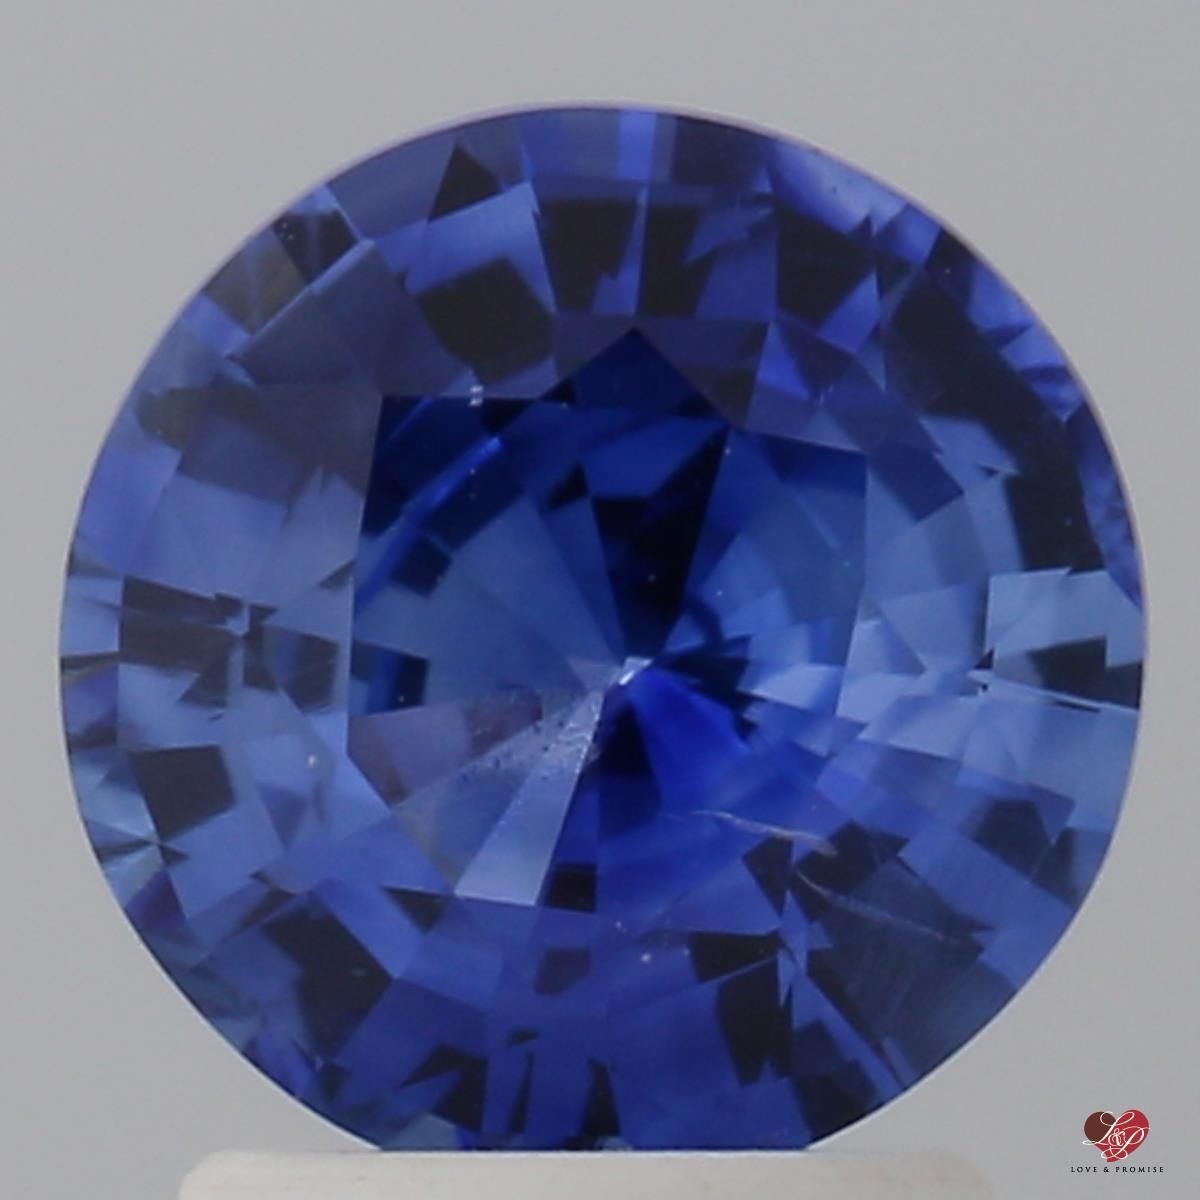 2.03cts Round Medium Vibrant Ceylon Blue Sapphire